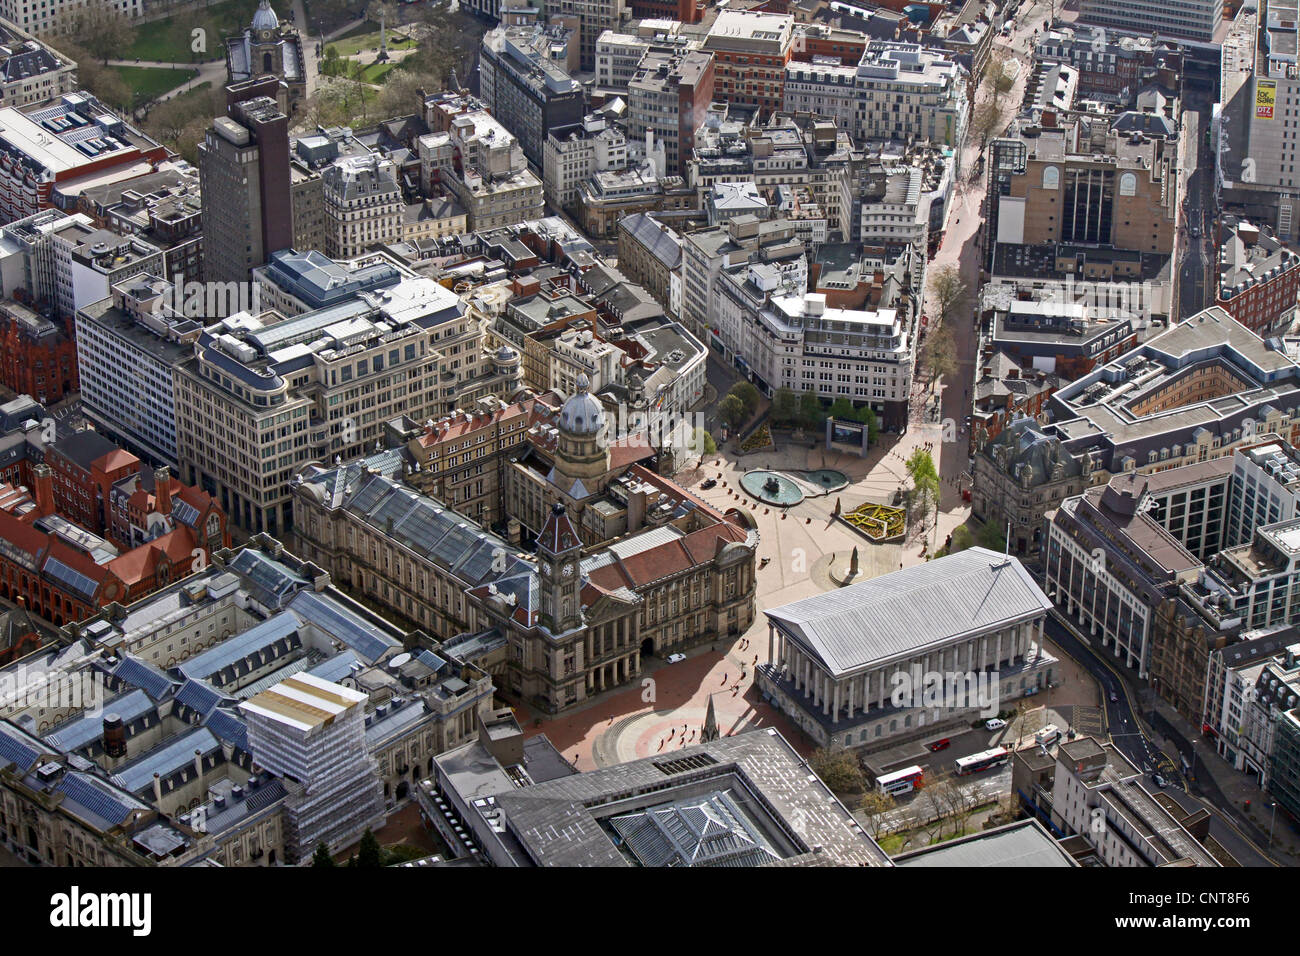 Vista aérea del centro de la ciudad de Birmingham, Victoria Square, el Museo y Galería de Arte, el Centro de Convenciones Internacional Foto de stock